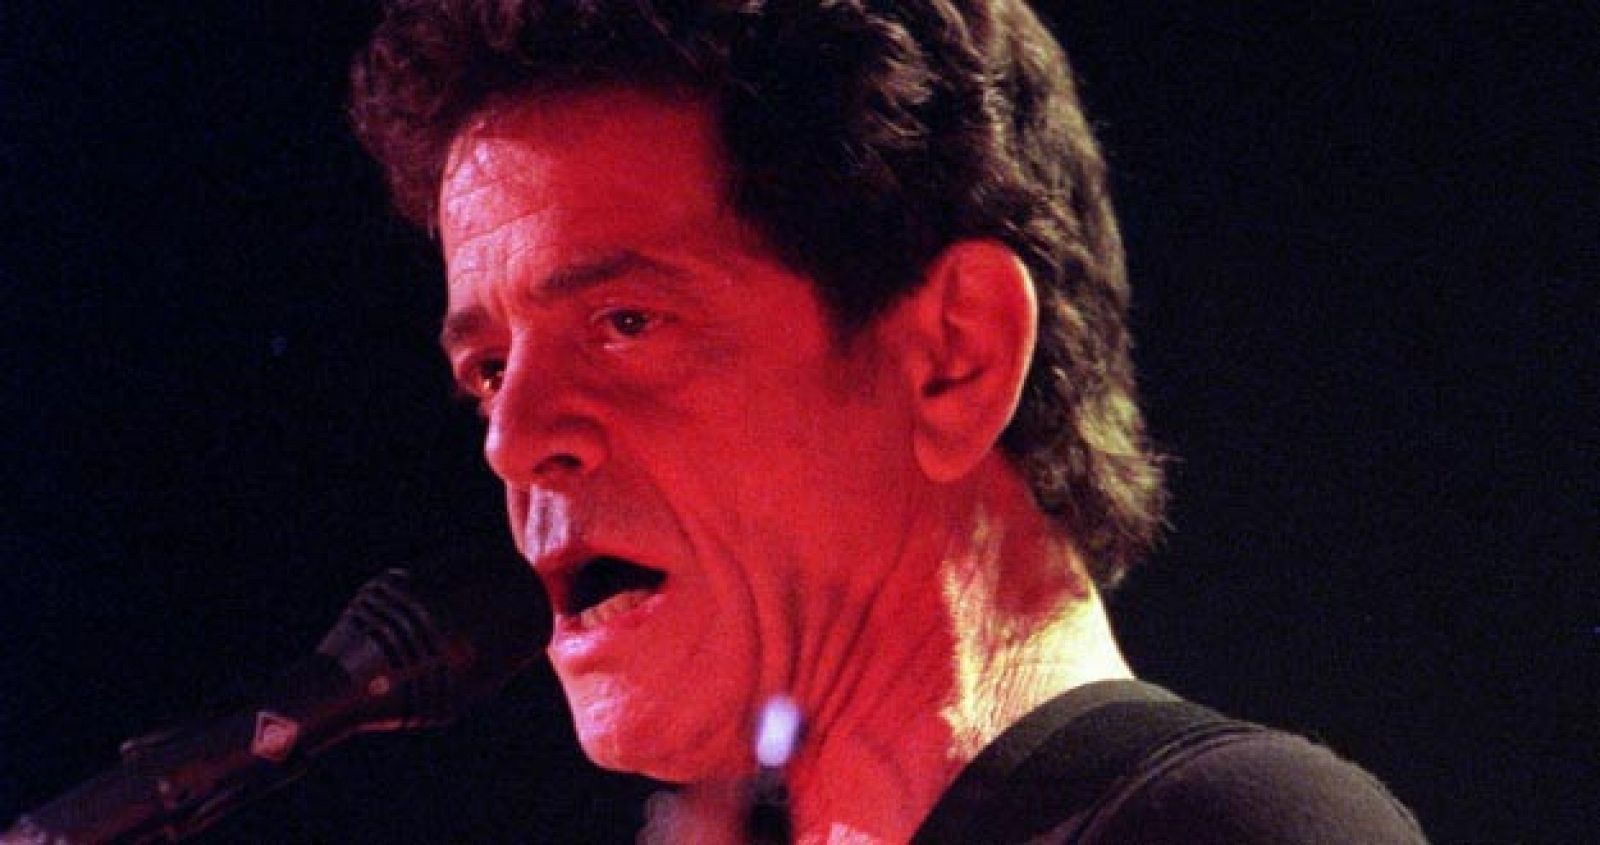 Fotografía de archivo del 17 de abril del 2000 del legendario músico de rock estadounidense Lou Reed, cofundador de la banda The Velvet Underground